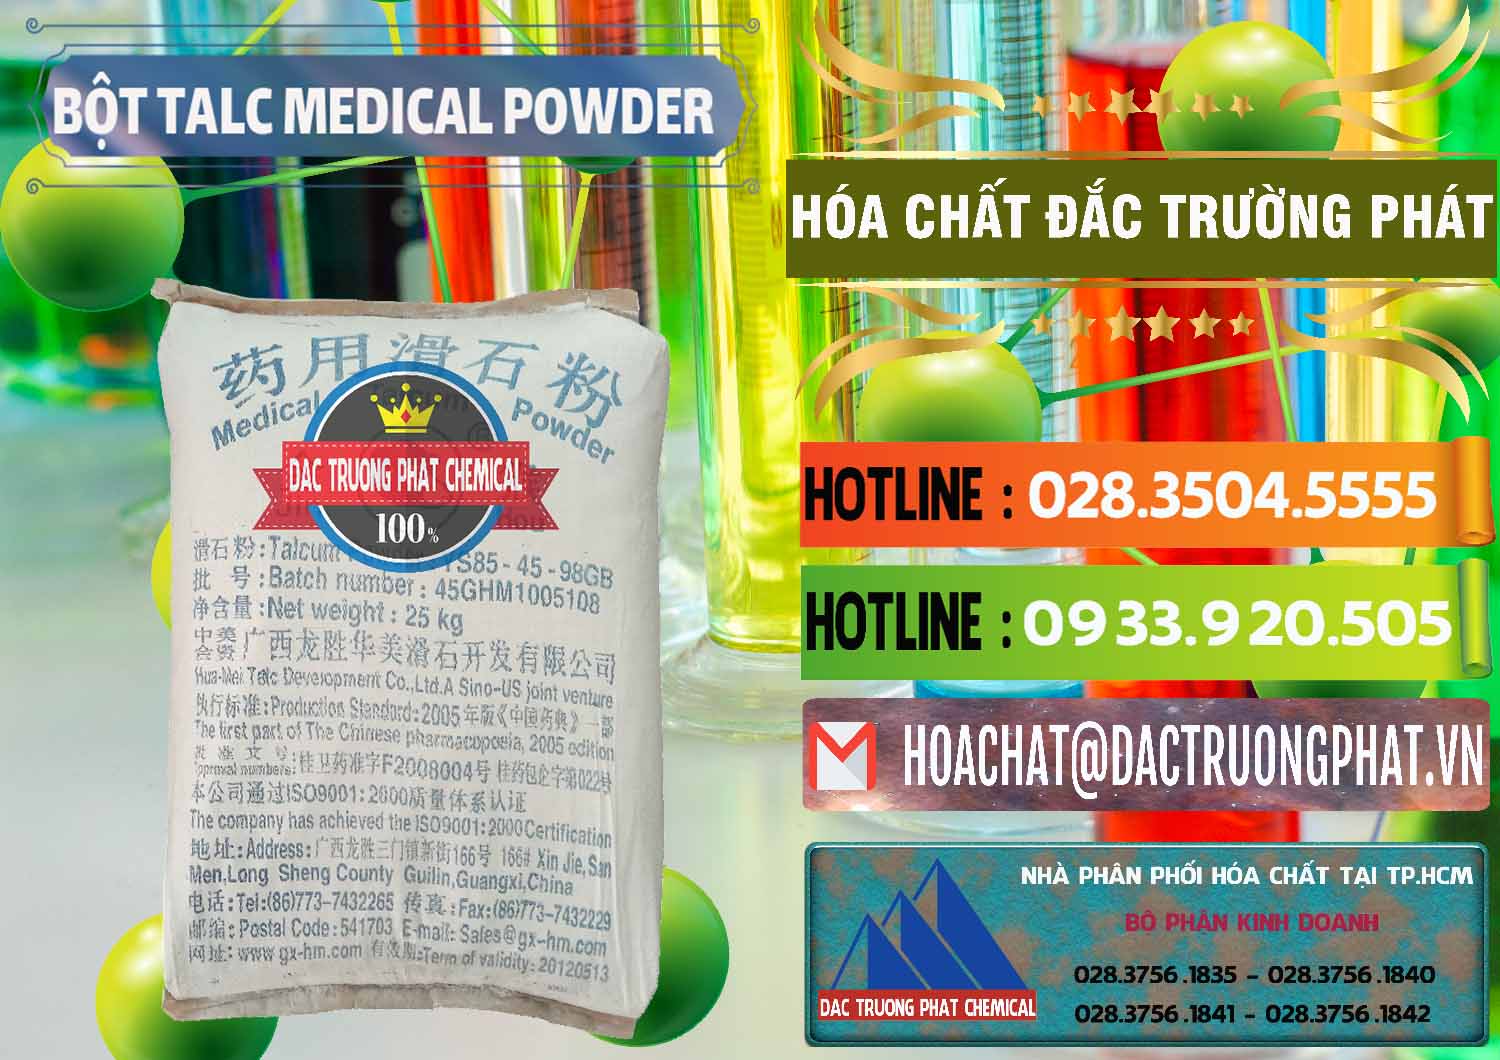 Cty bán và cung cấp Bột Talc Medical Powder Trung Quốc China - 0036 - Nơi cung ứng & phân phối hóa chất tại TP.HCM - cungcaphoachat.com.vn